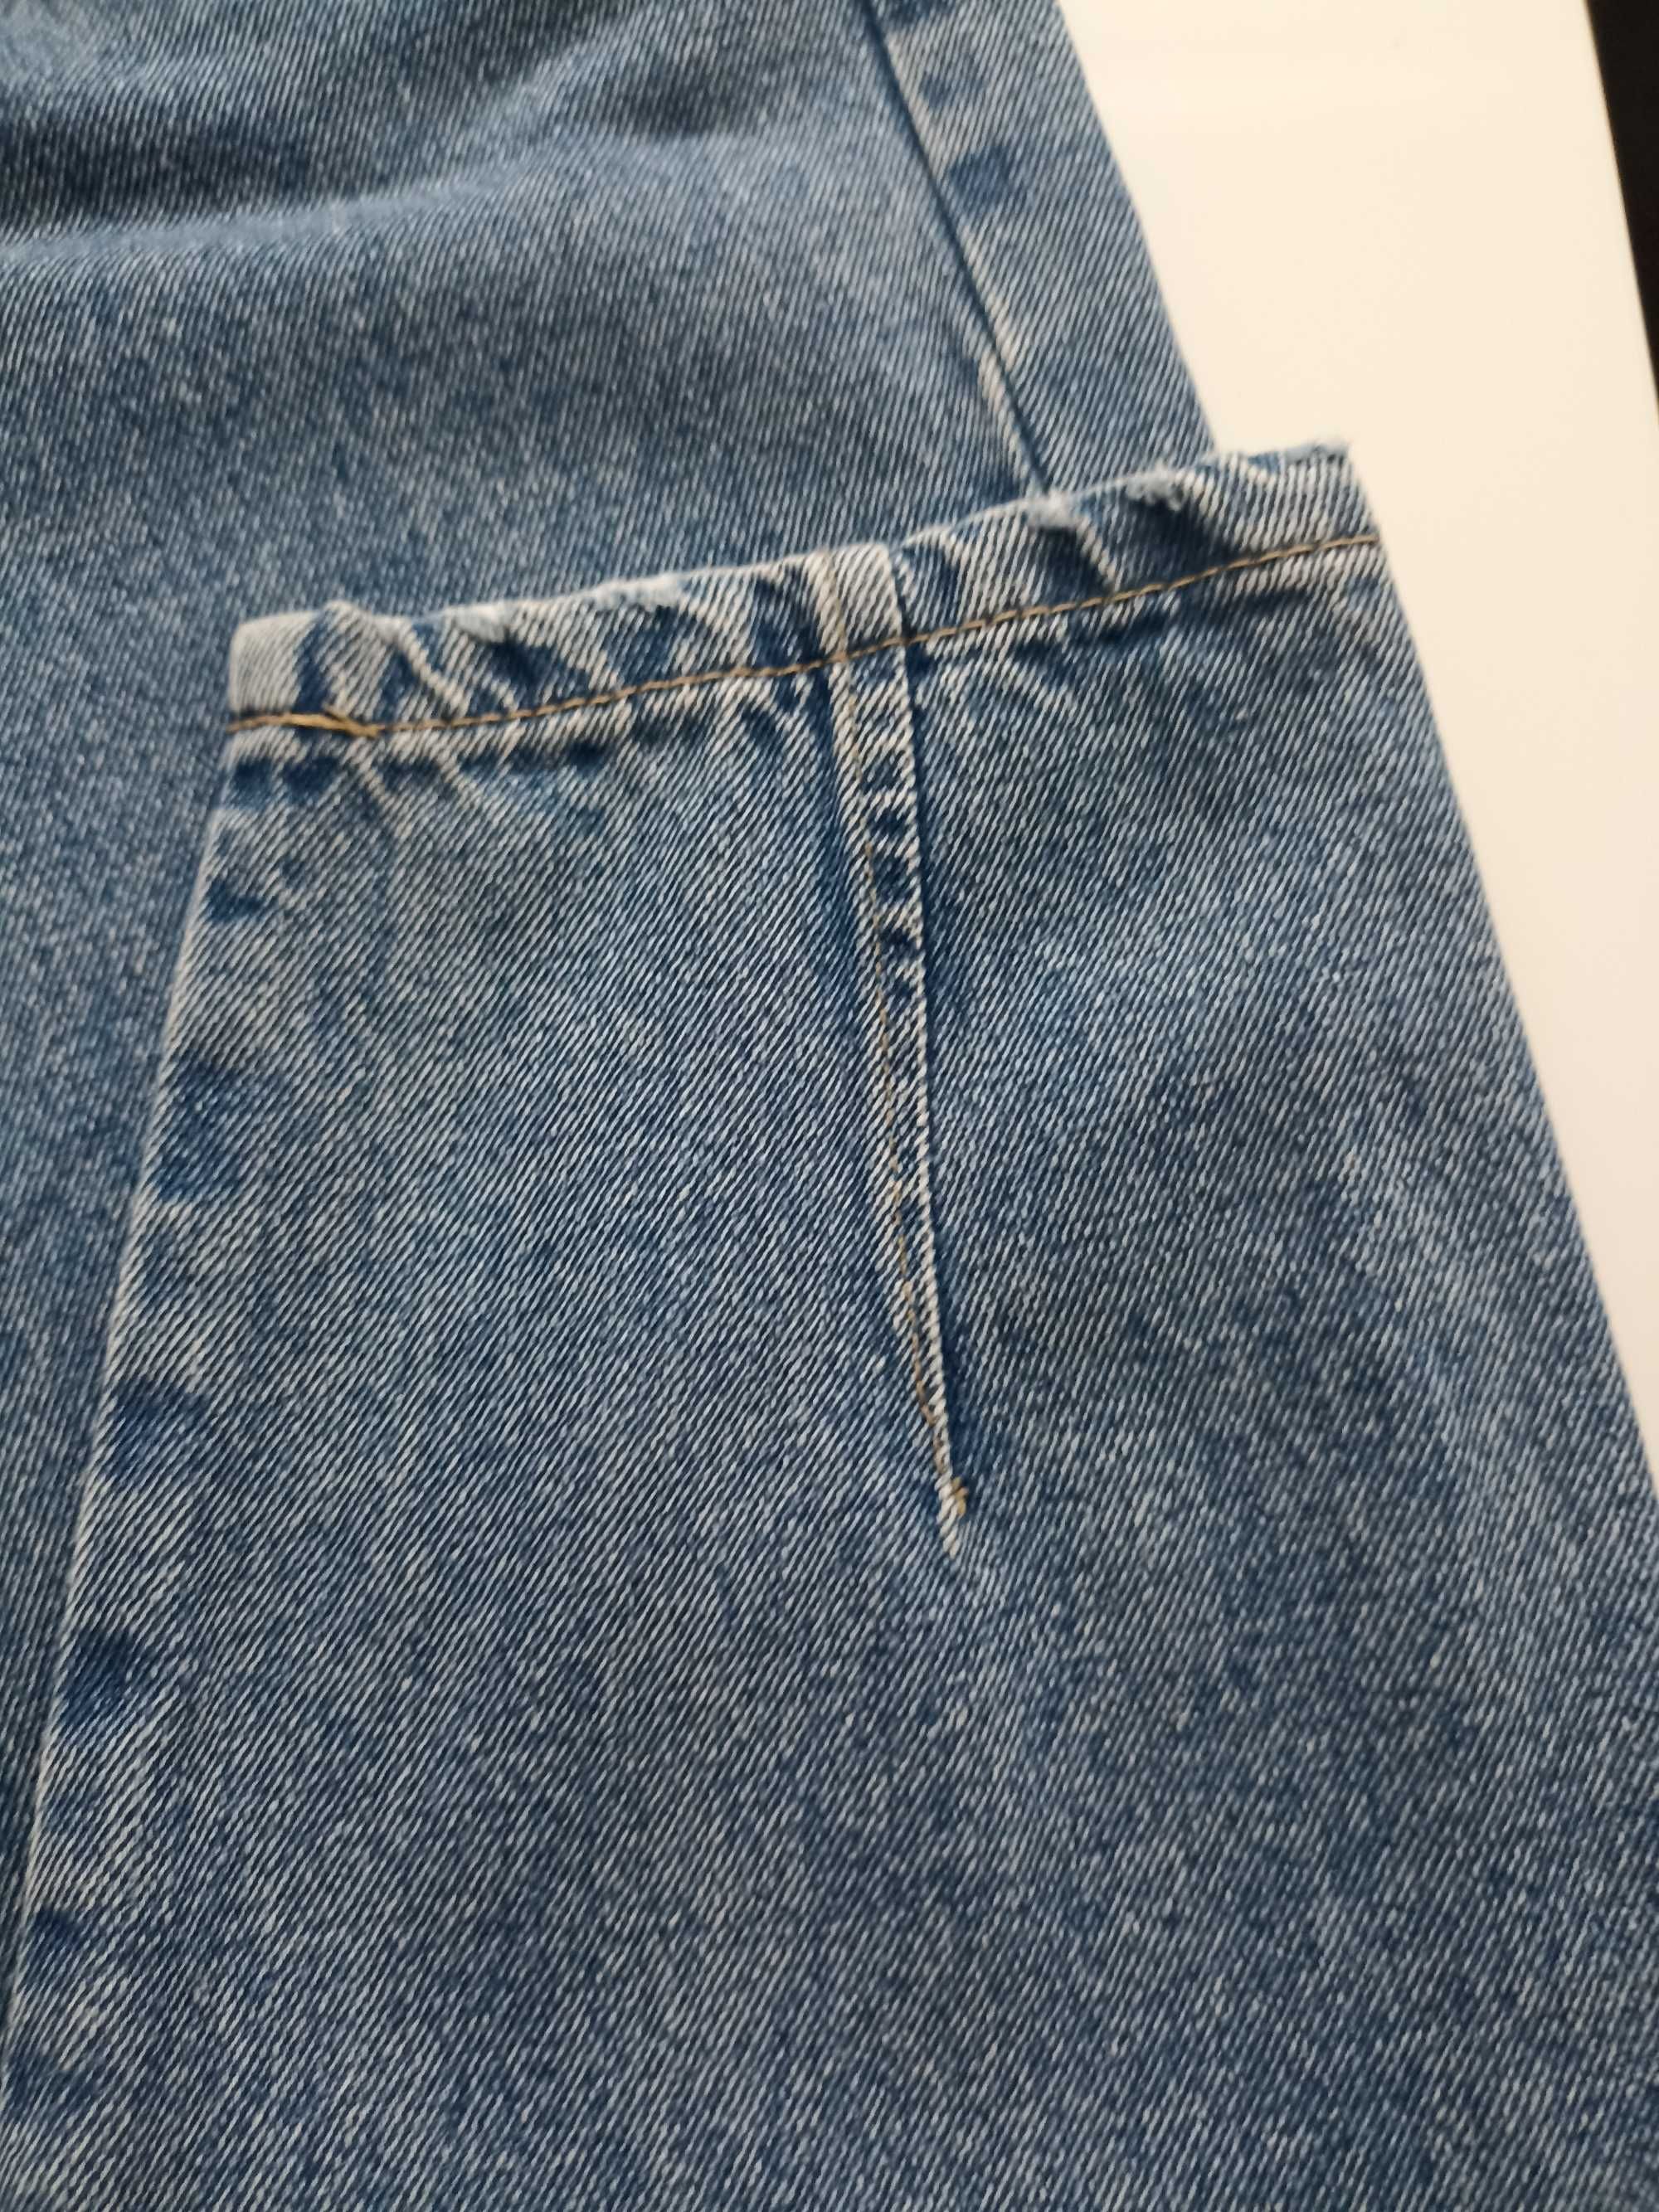 Sinsay Sprzedam spodnie jeansowe damskie rozmiar 32